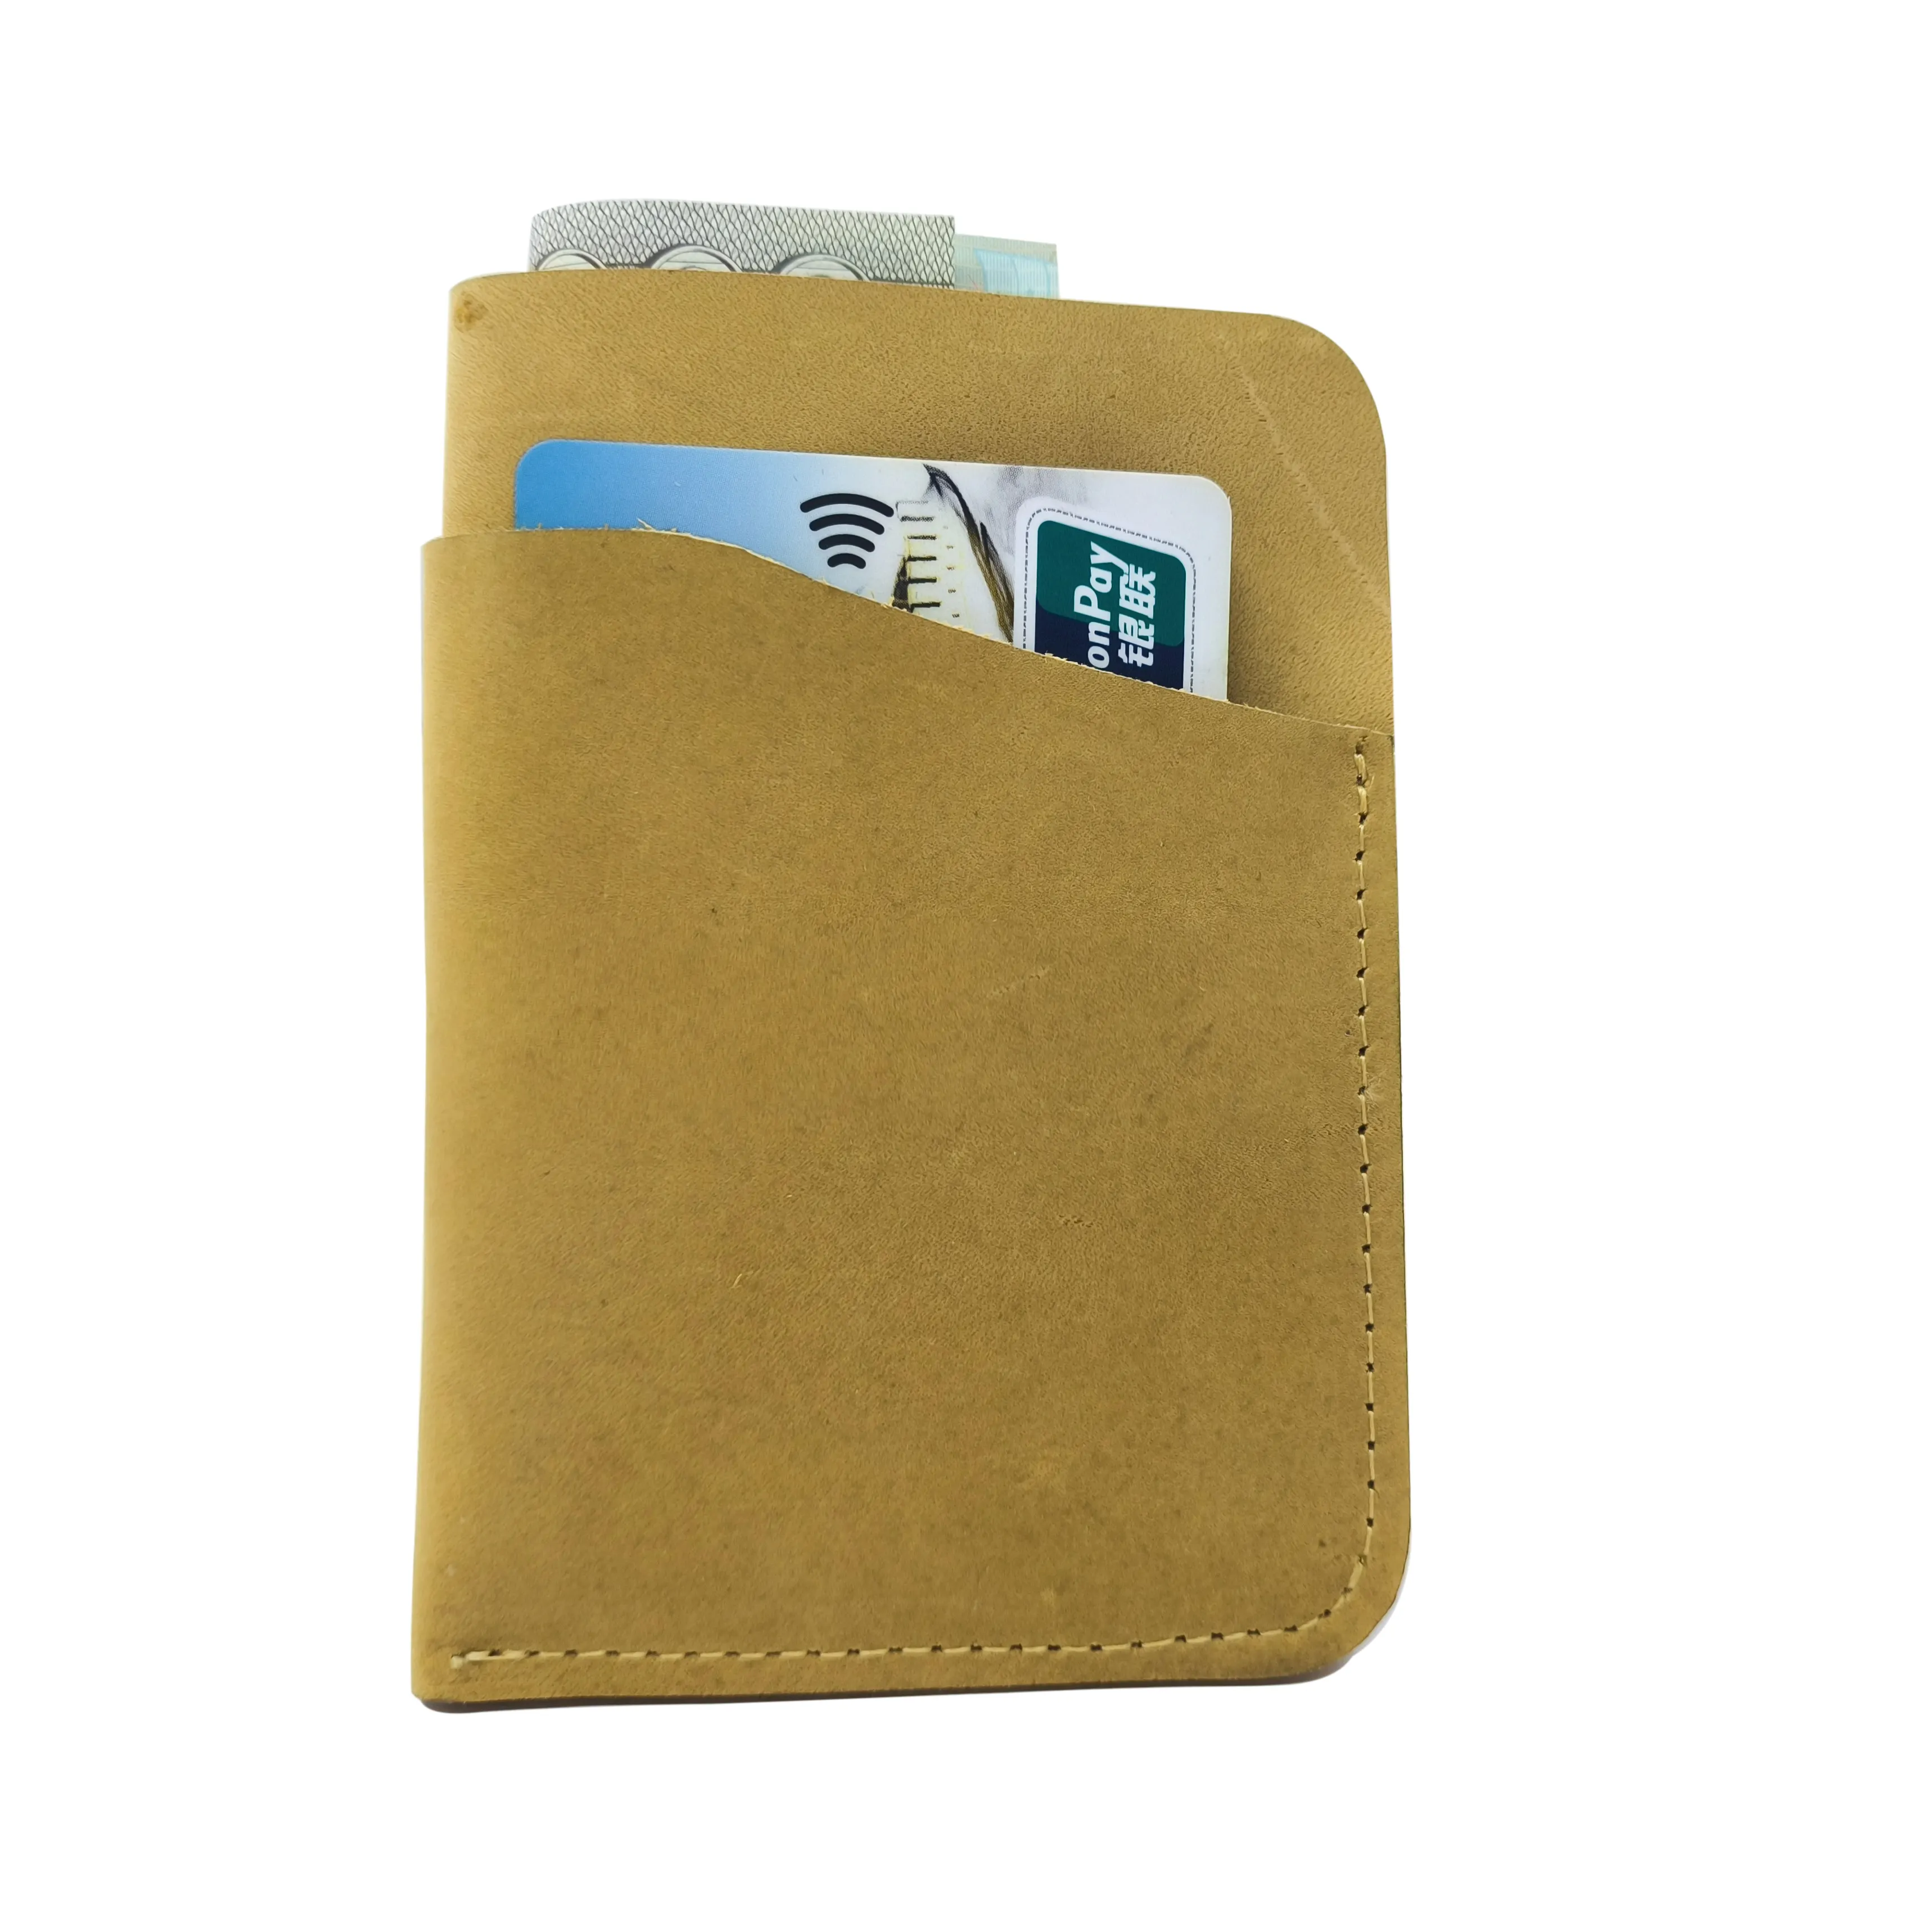 인기있는 가죽 지갑 빈티지 멀티 카드 슬롯 RFID 남성 정품 가죽 지갑 카드 홀더